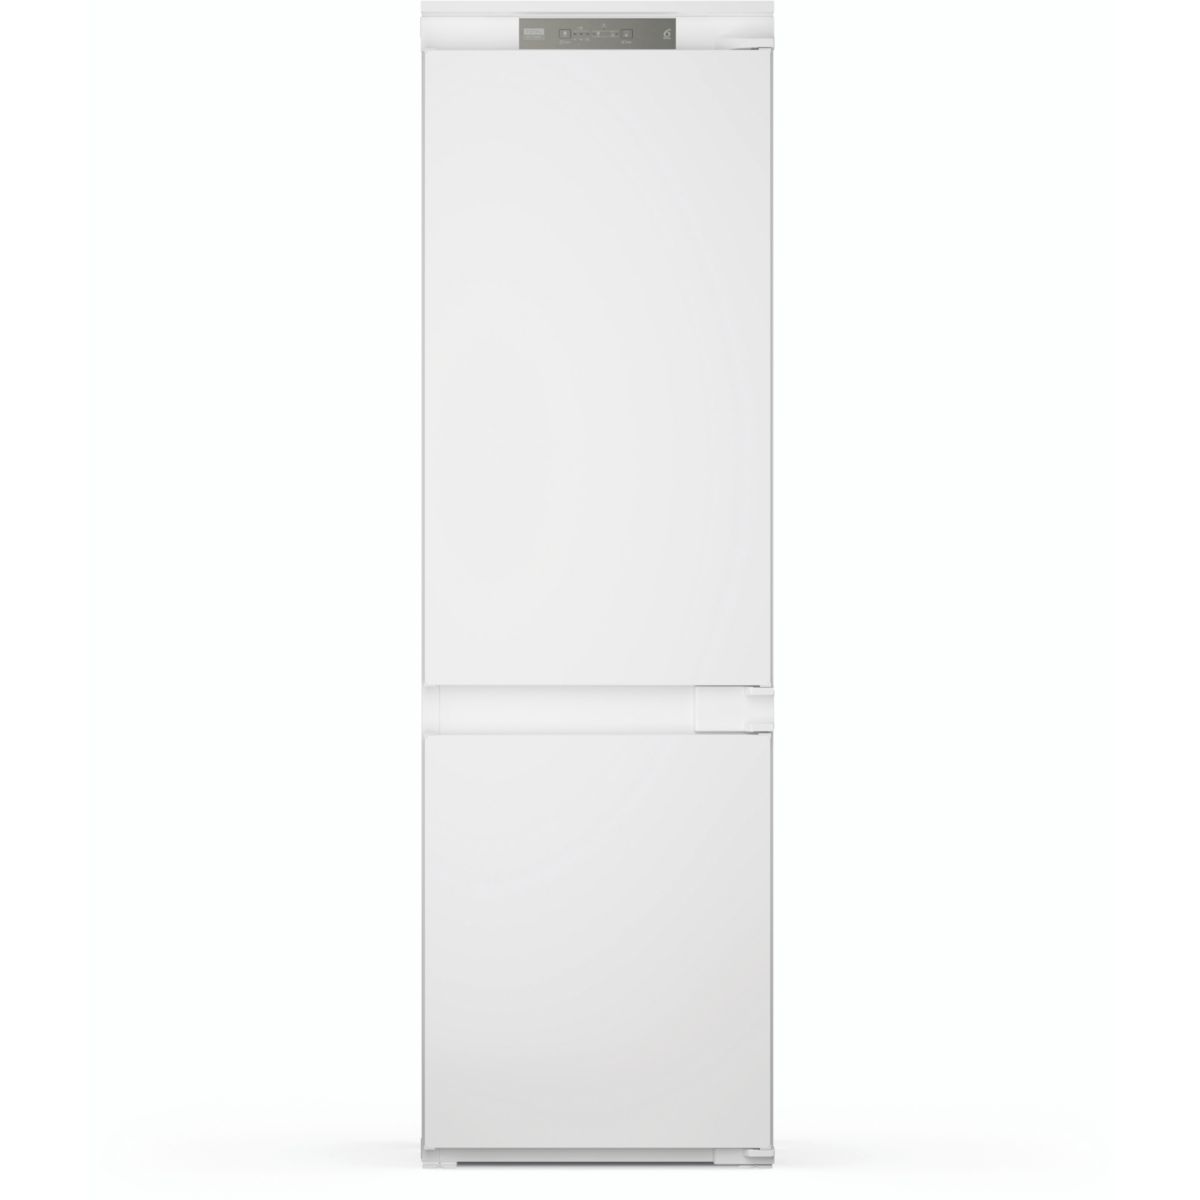 Réfrigérateur combiné encastrable WHIRLPOOL WHC18T323P Supreme Silence 3